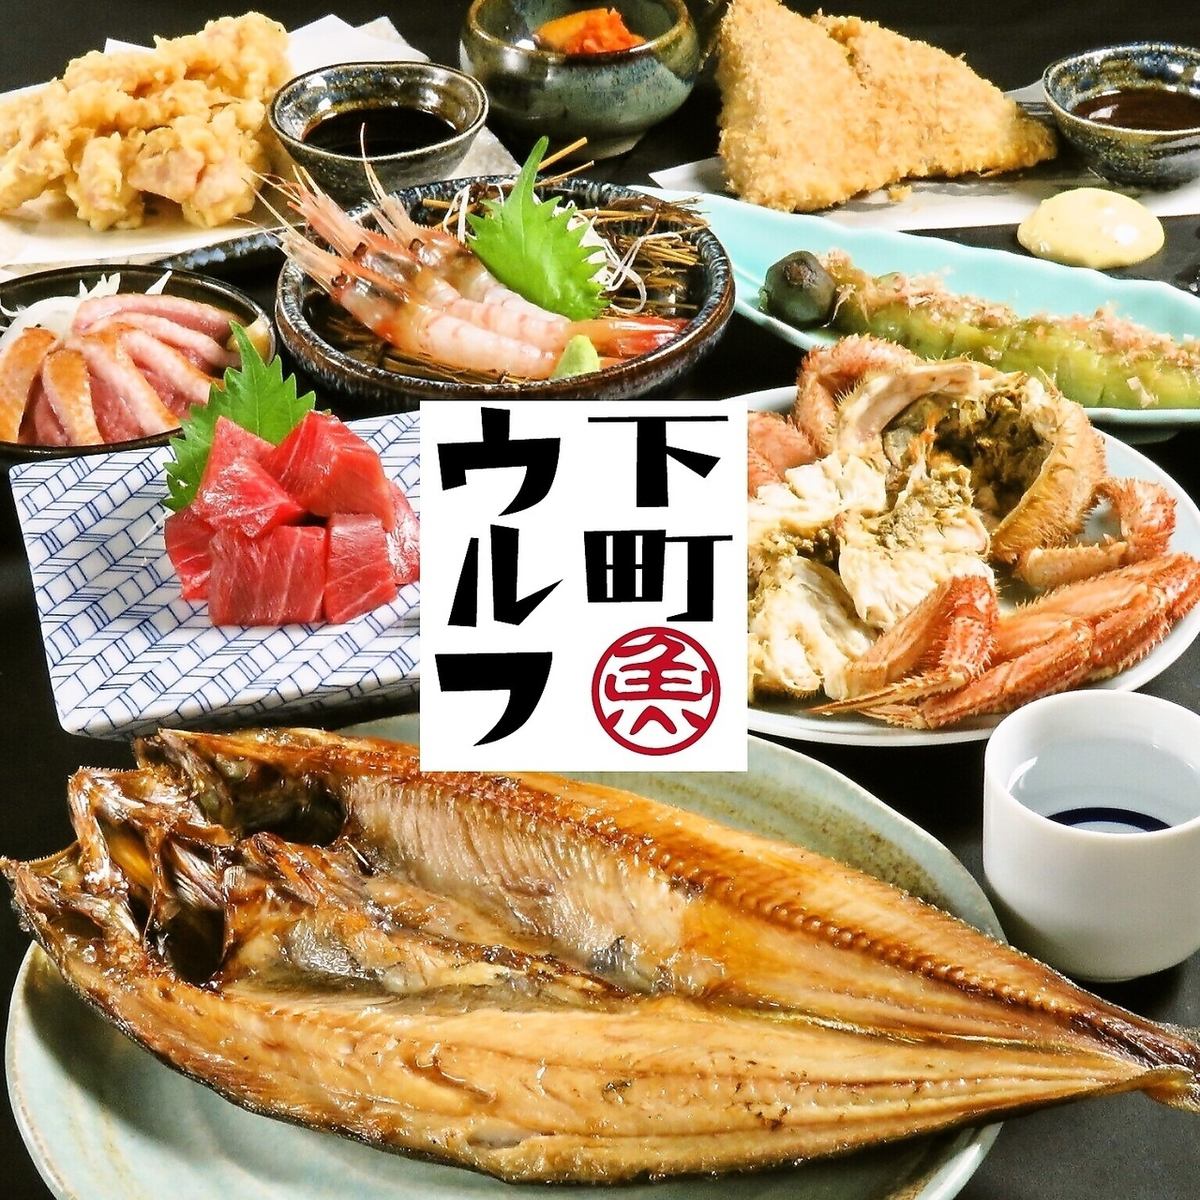 Speaking of local sake and delicious seafood in Tanukikoji, Shitamachi Wolf!